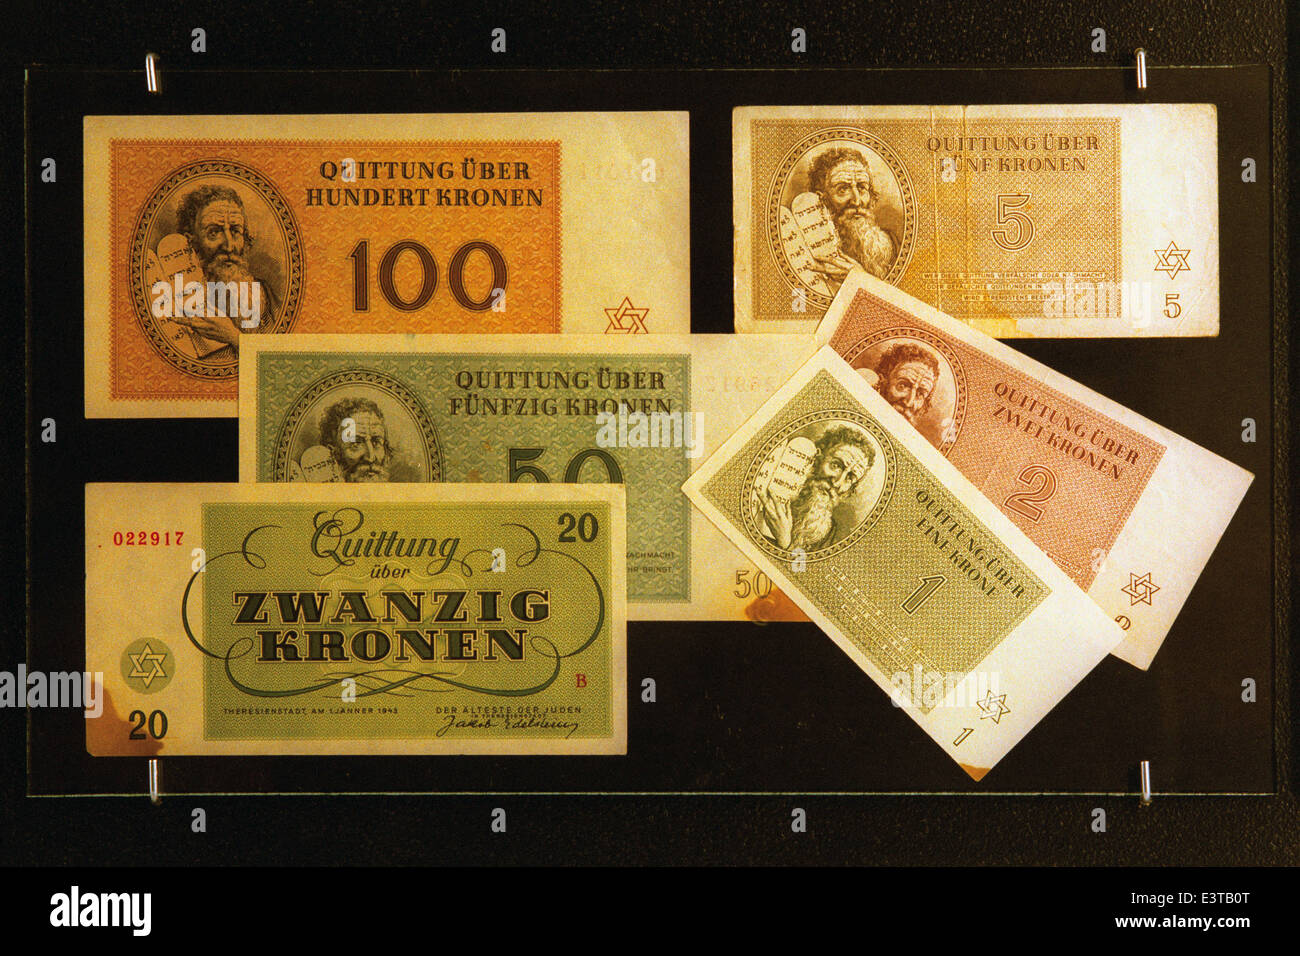 Papiergeld verwendet während Zweiter Weltkrieg in das Ghetto Theresienstadt in das Armeemuseum in Prag, Tschechische Republik ausgestellt. Stockfoto